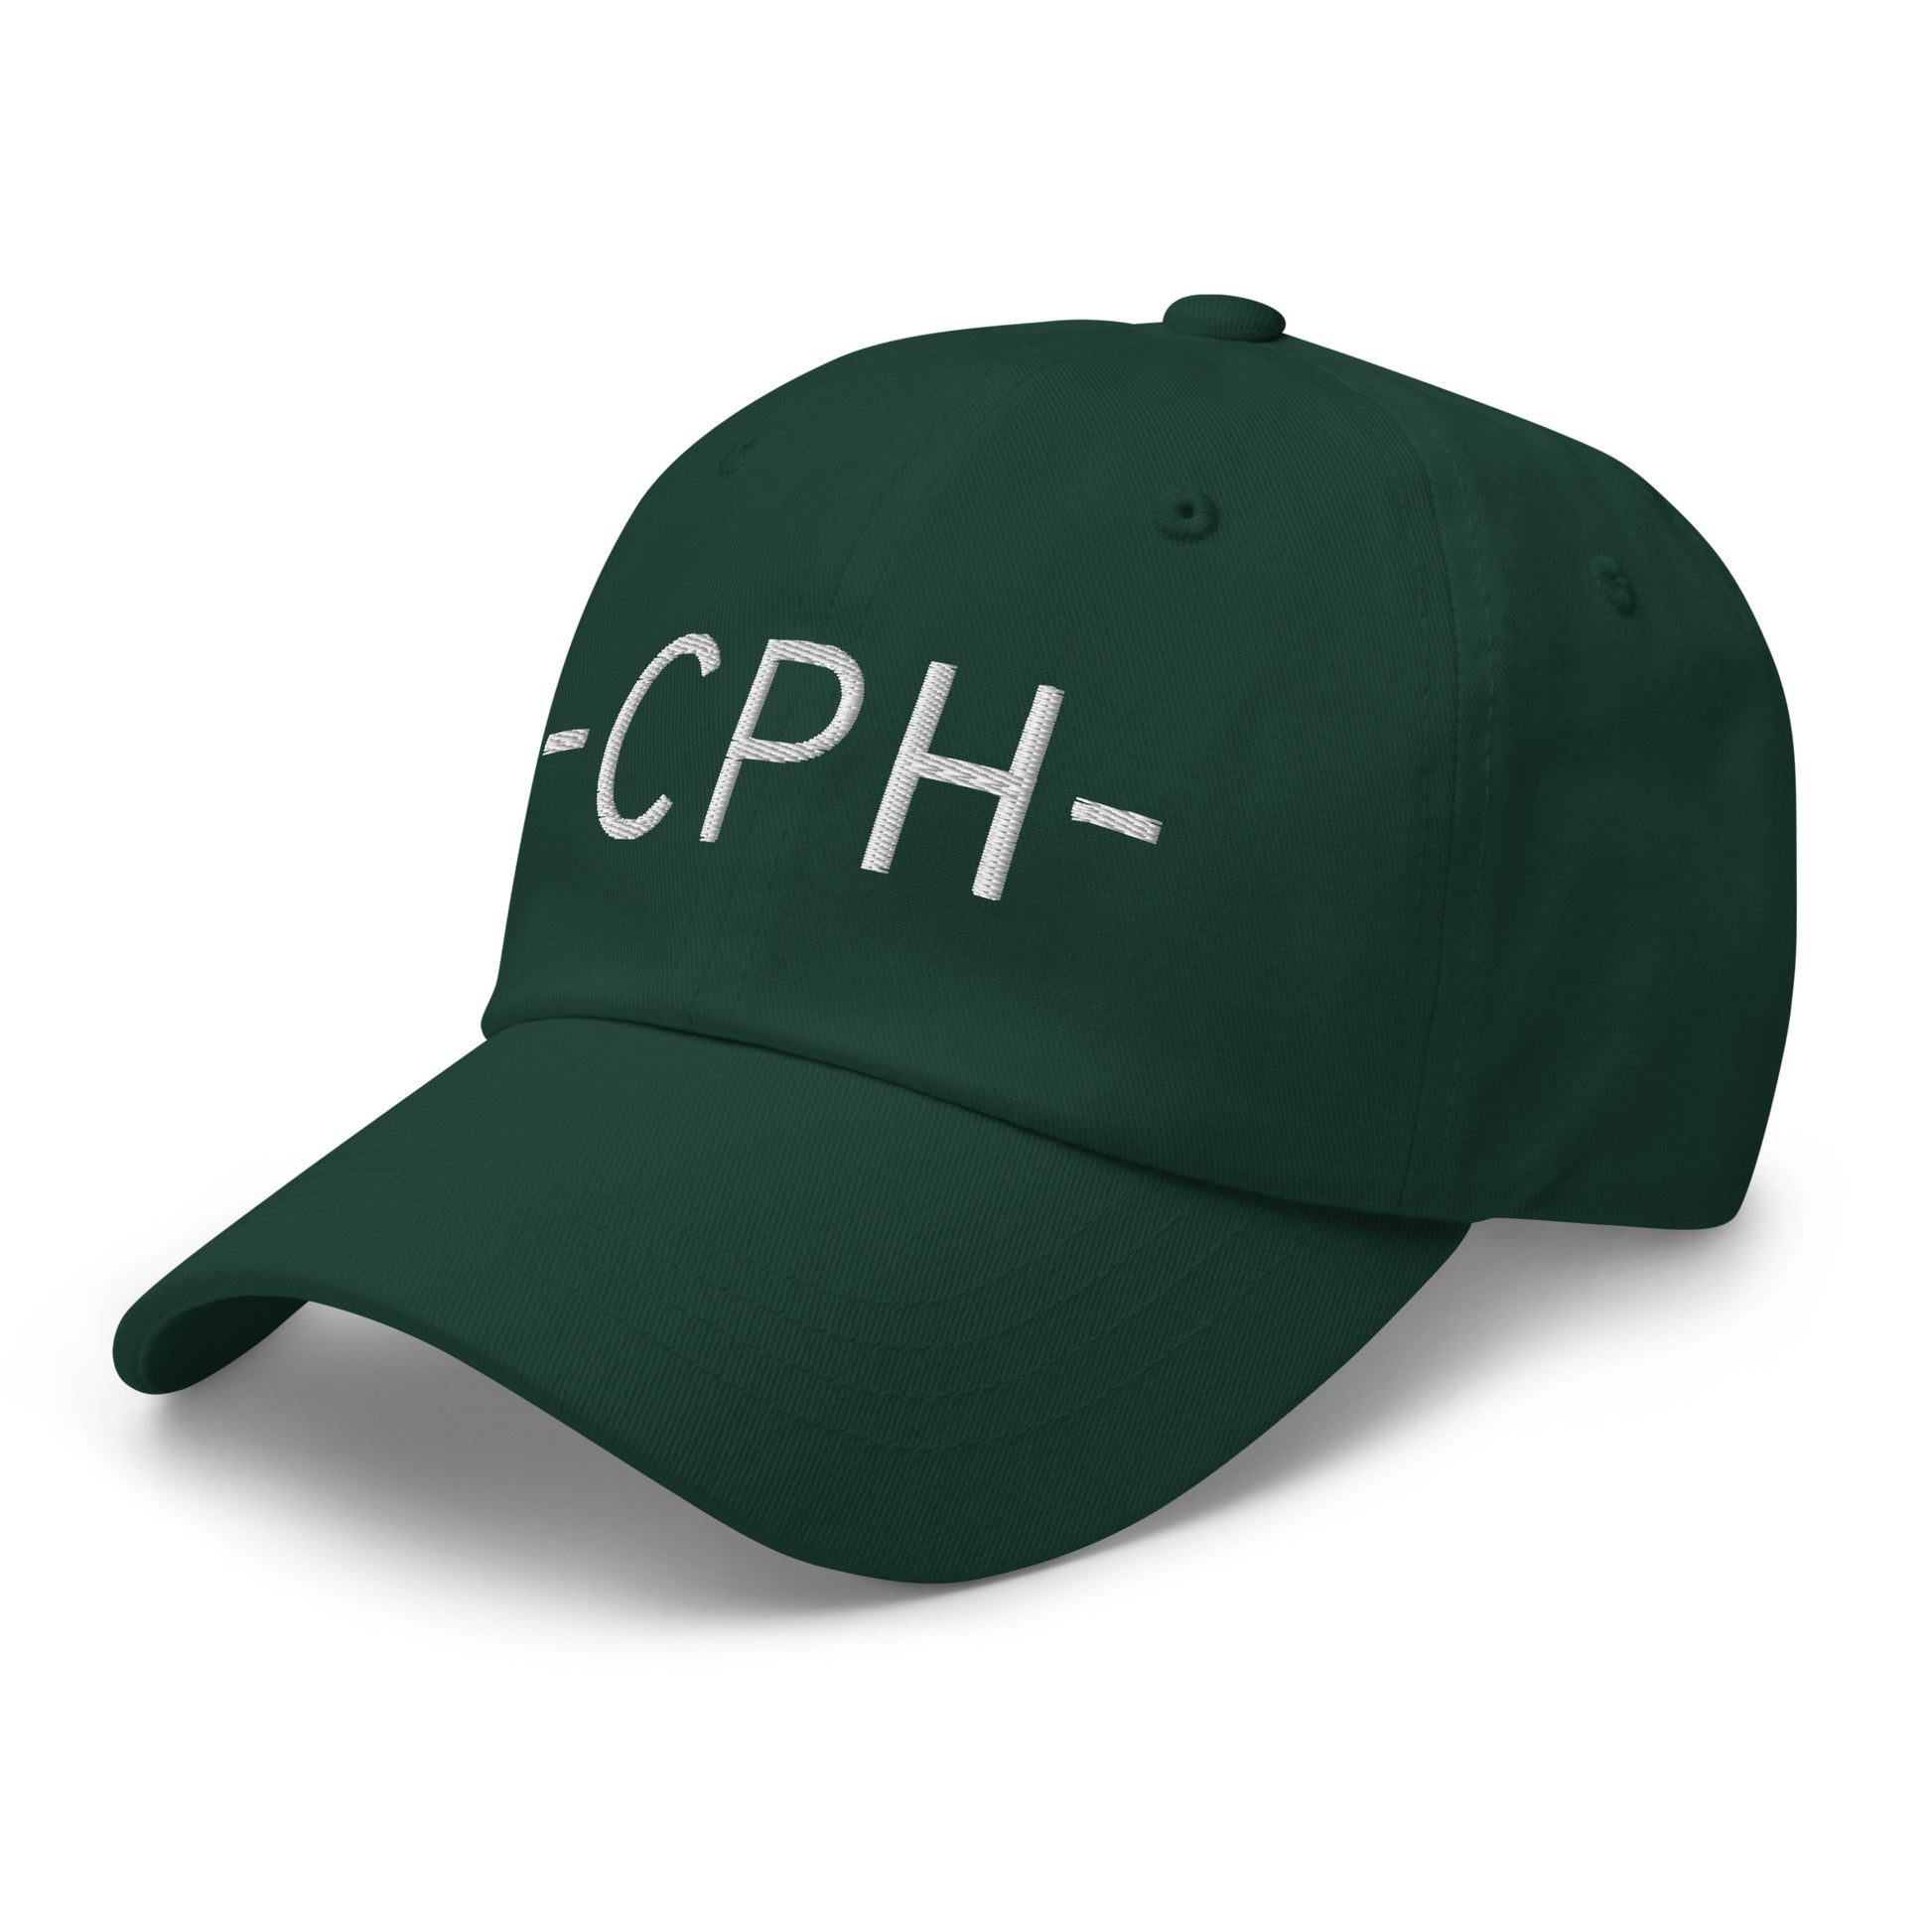 Souvenir Baseball Cap - White • CPH Copenhagen • YHM Designs - Image 18